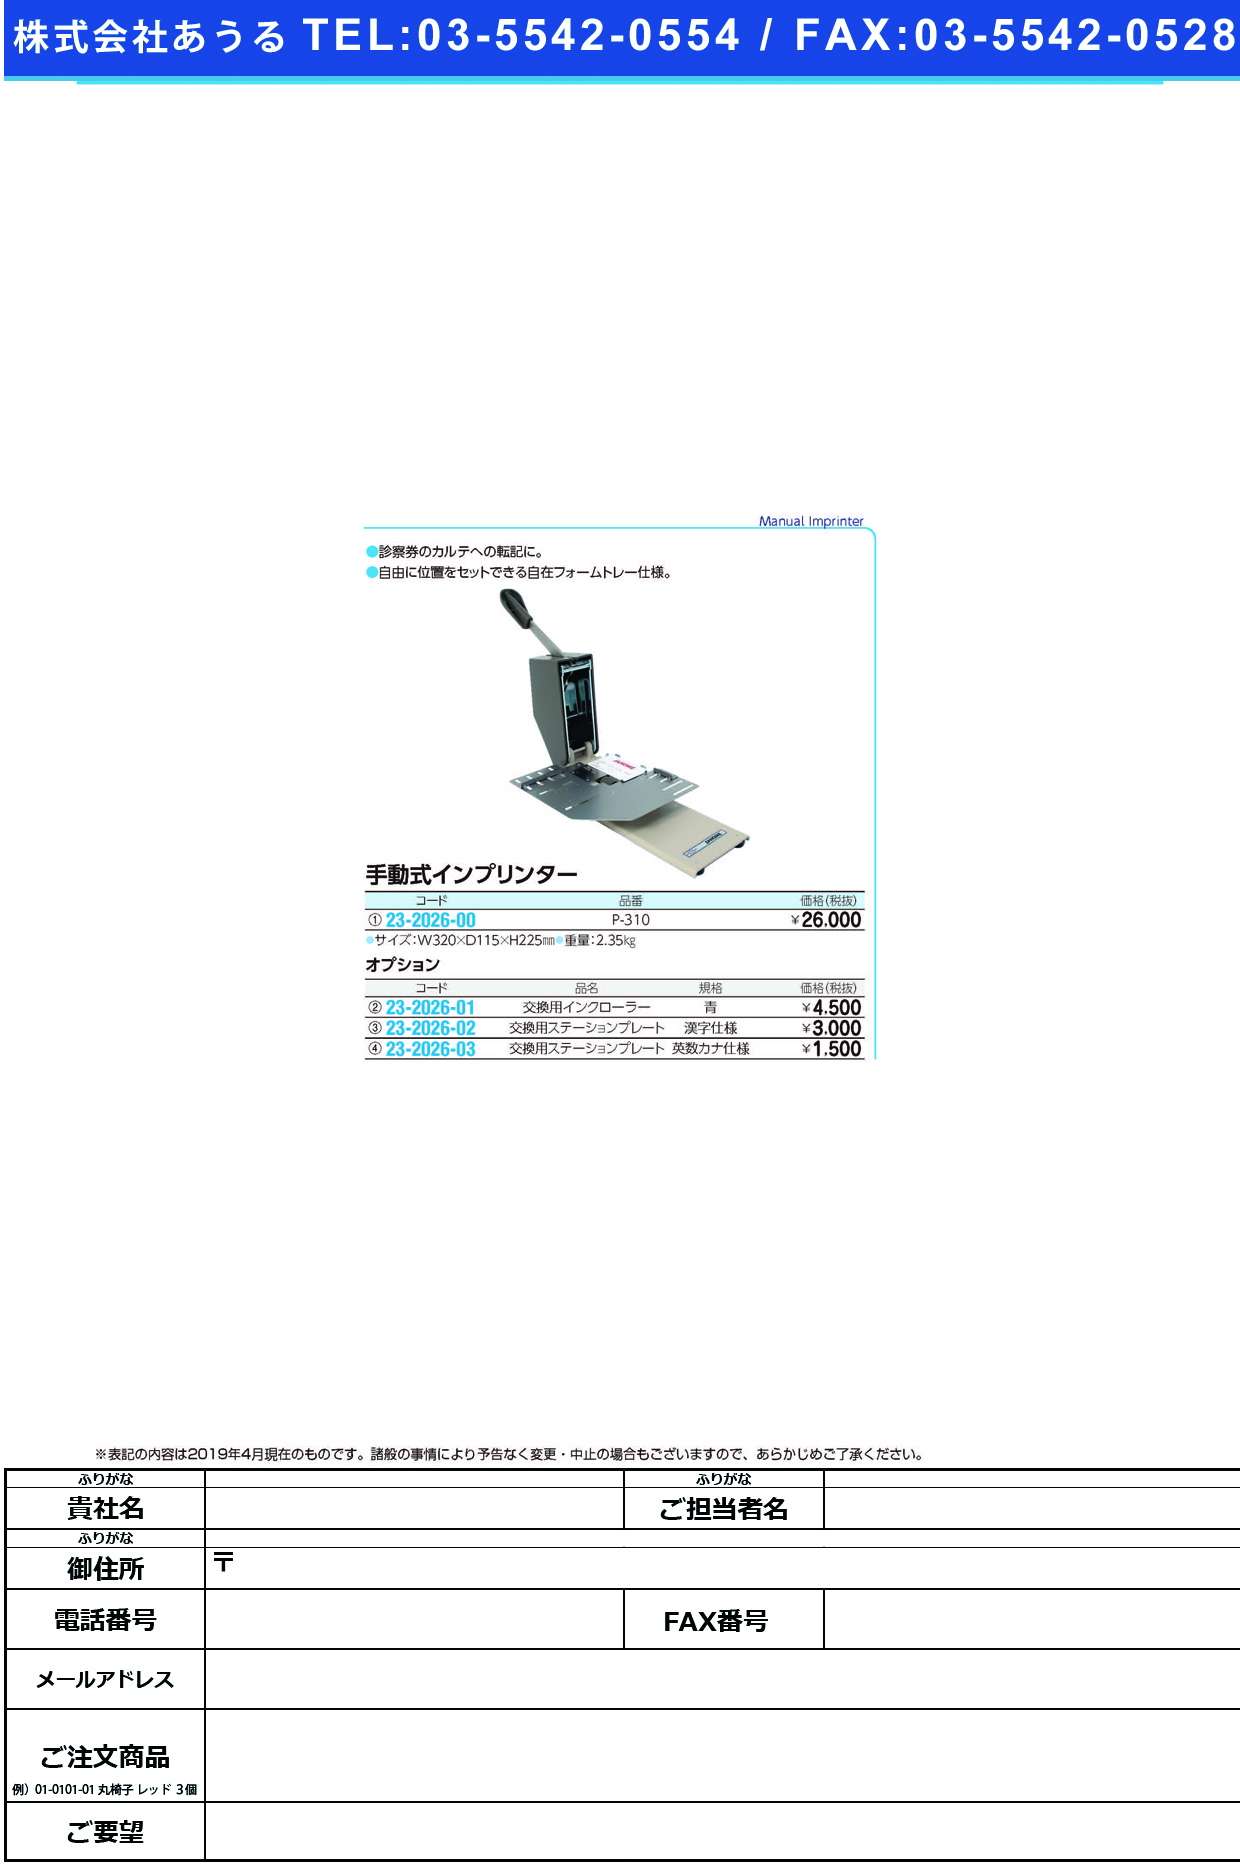 (23-2026-00)手動式インプリンター P-310 ｼｭﾄﾞｳｼｷｲﾝﾌﾟﾘﾝﾀｰ【1台単位】【2019年カタログ商品】